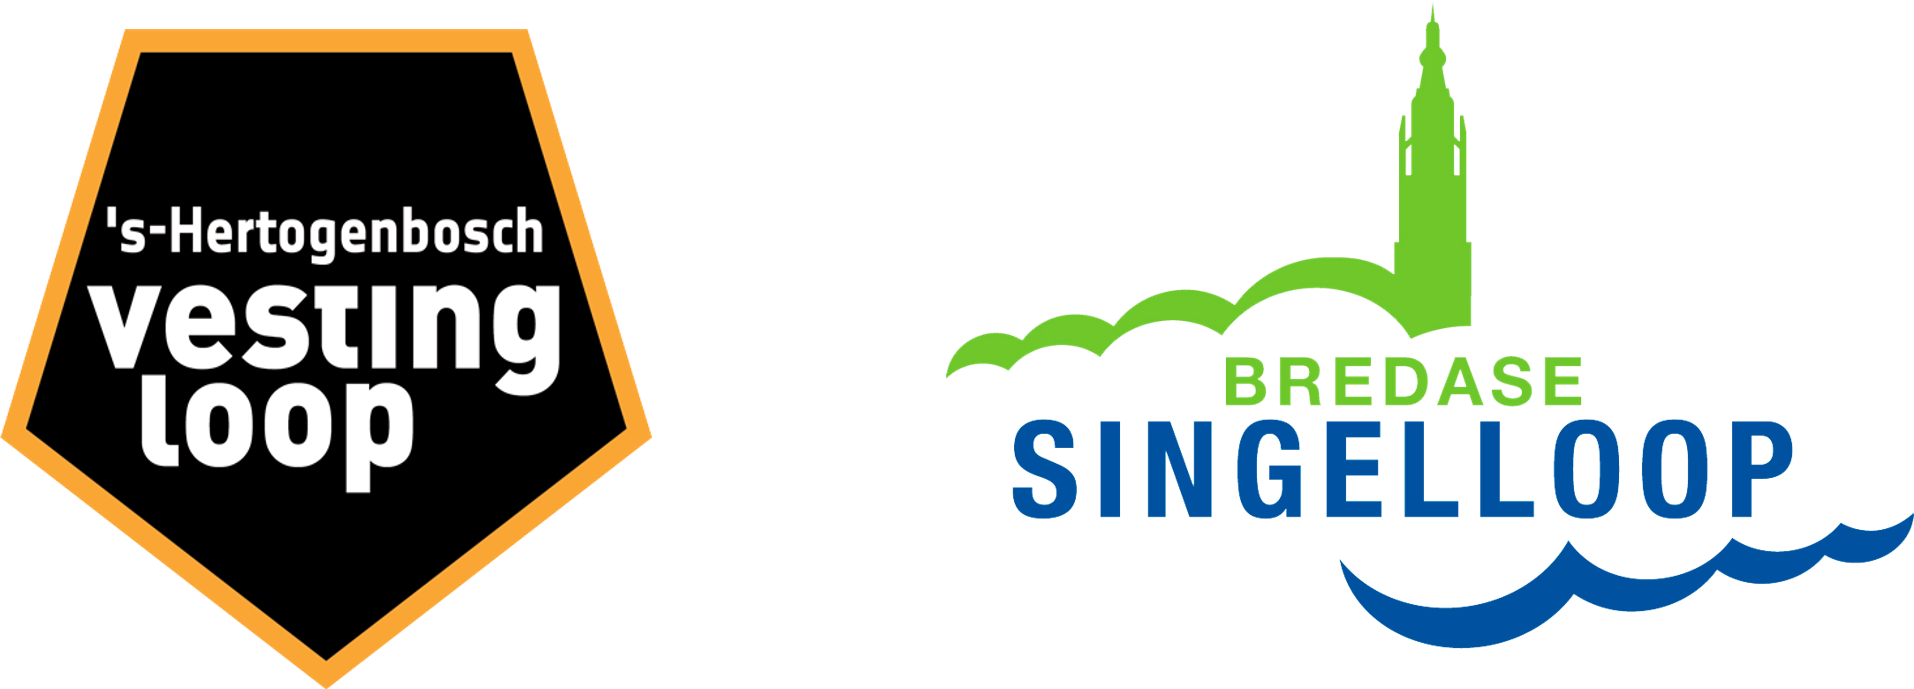 logo-s-vesting-singelloop.png